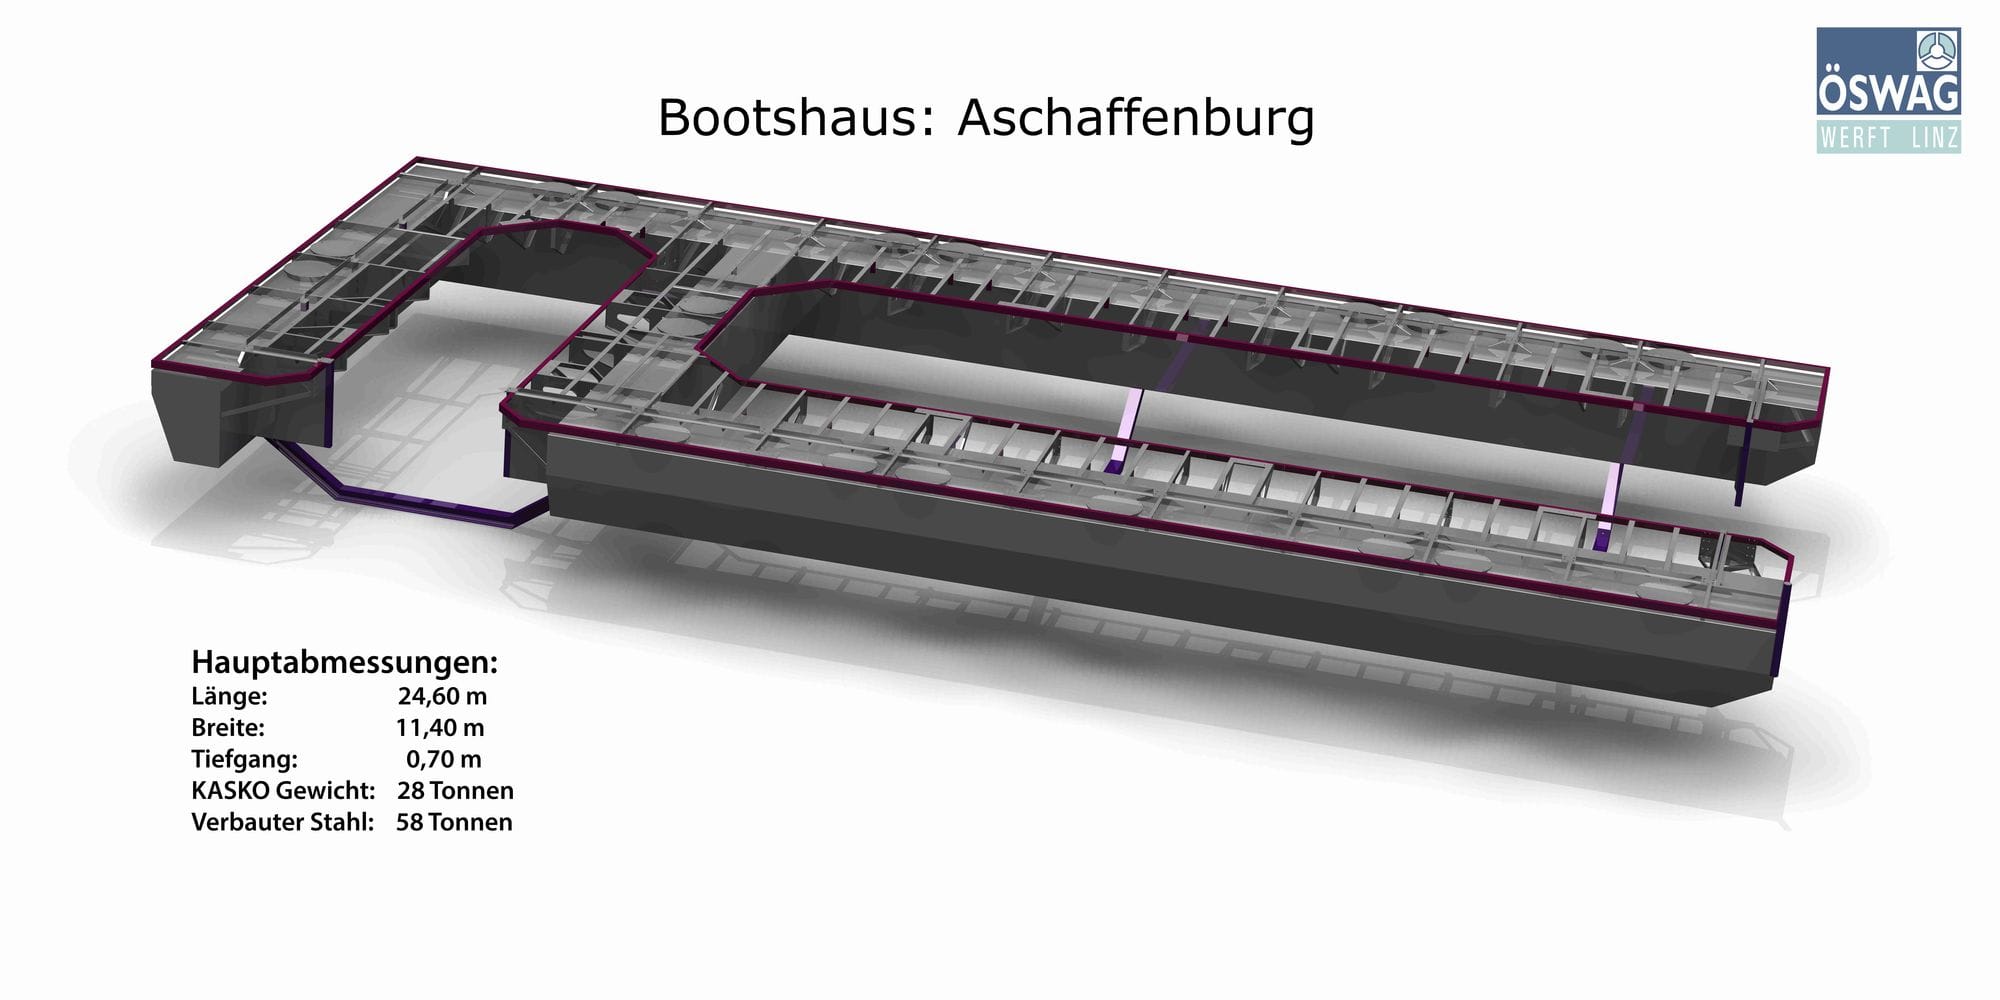 oeswag werft konstruktion design bootshaus aschaffenburg